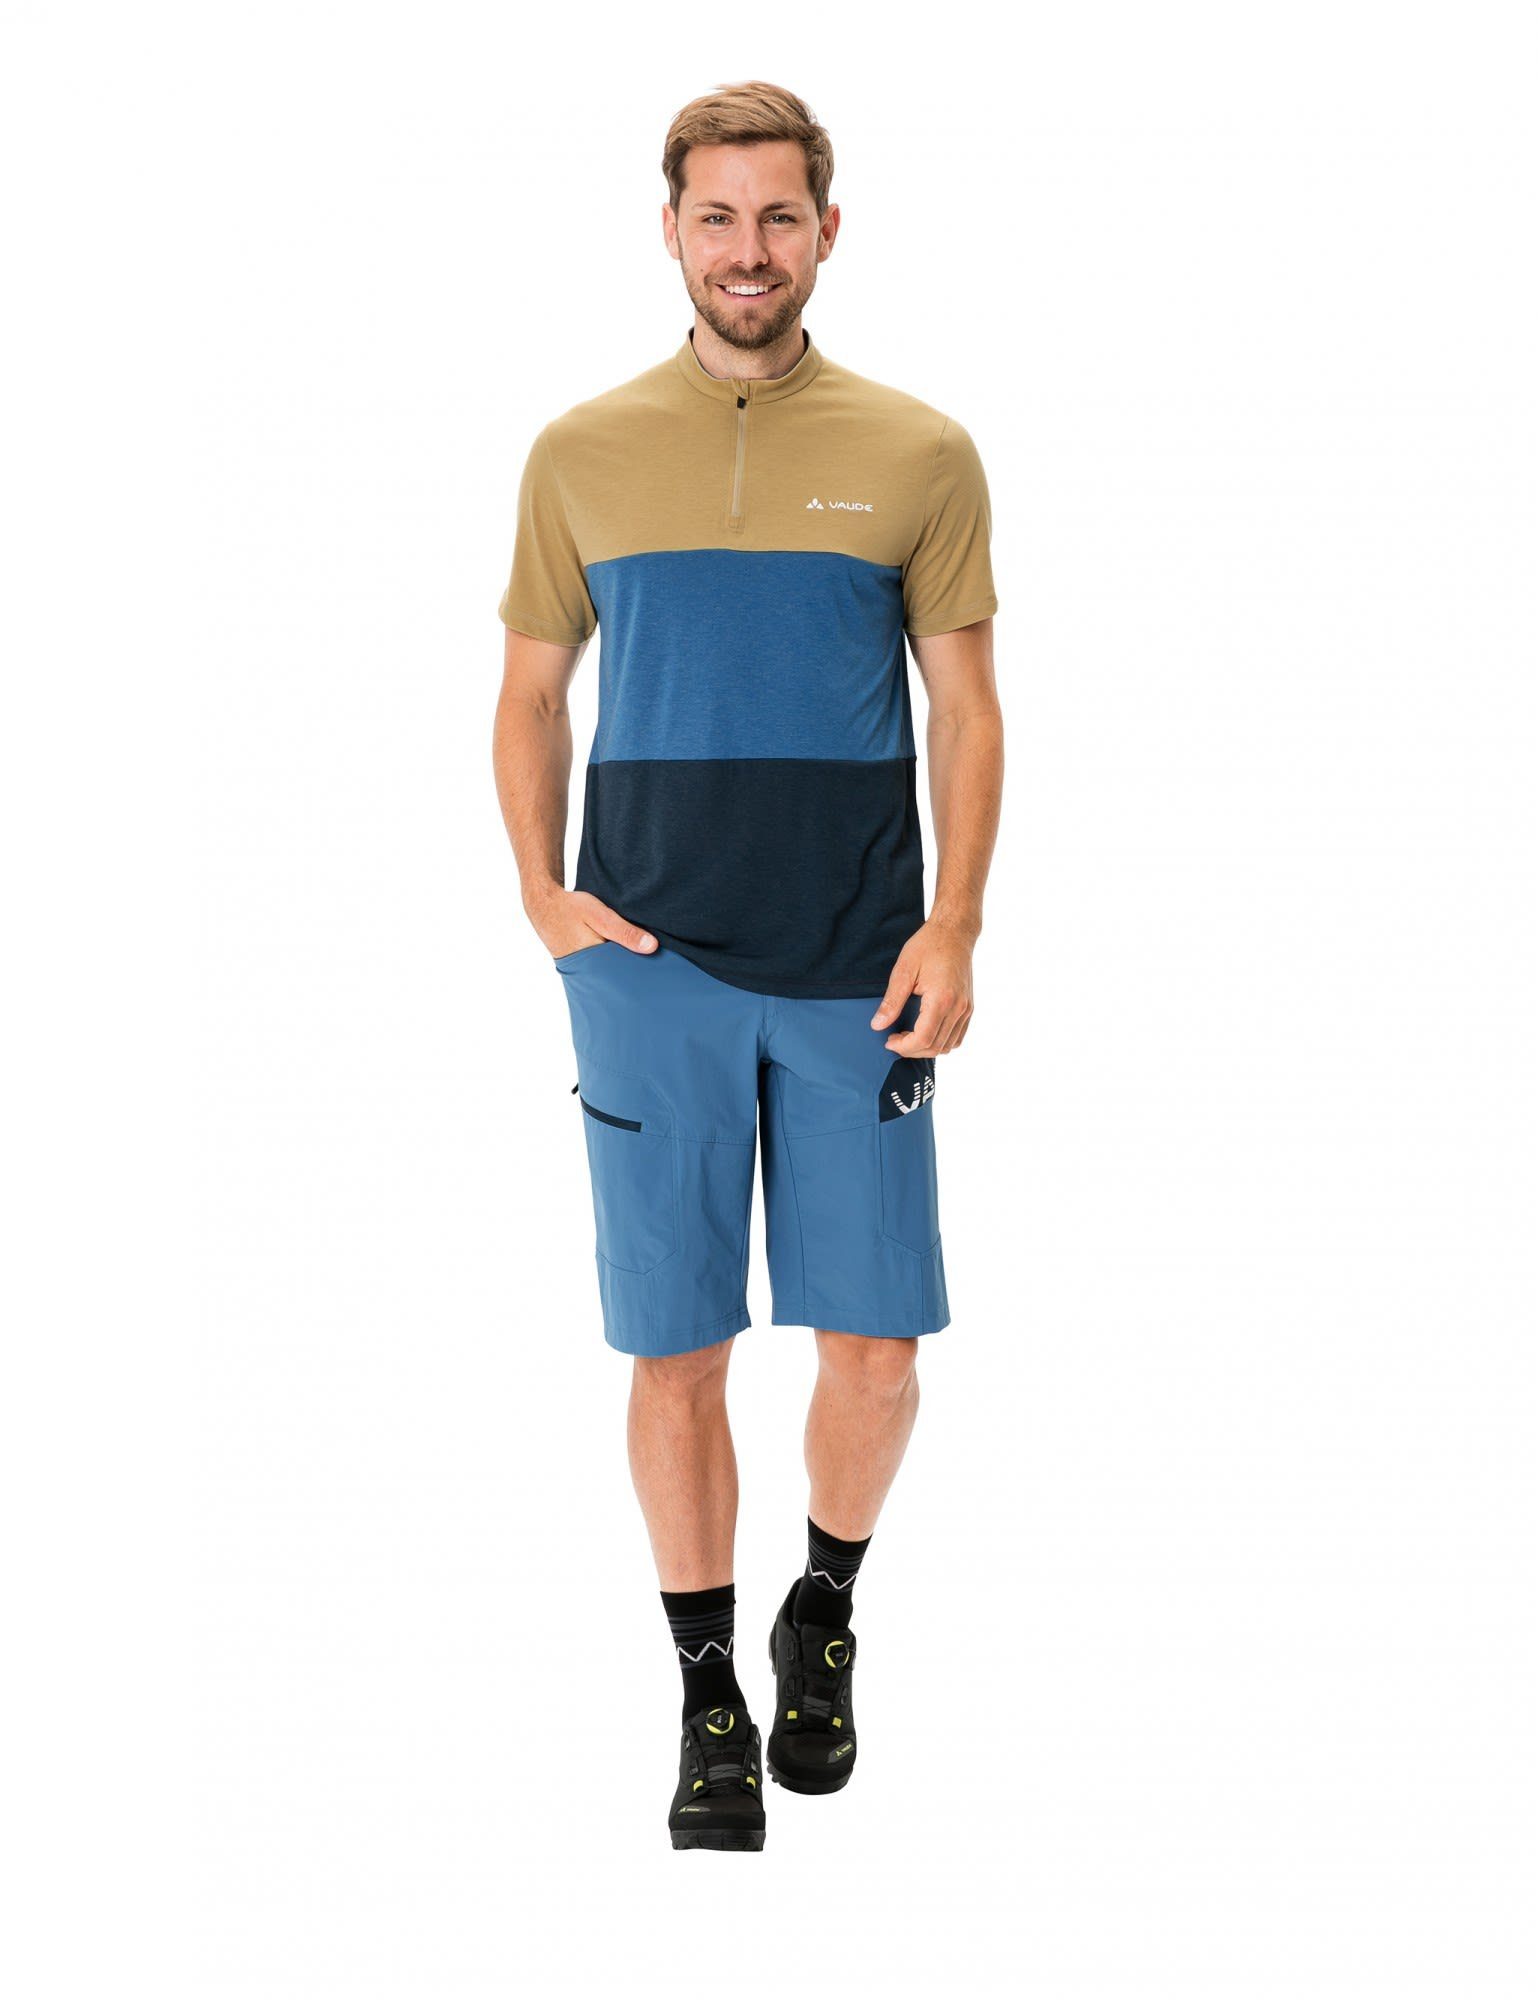 Qimsa Herren Vaude Mens VAUDE T-Shirt Kurzarm-Shirt Shirt Desert